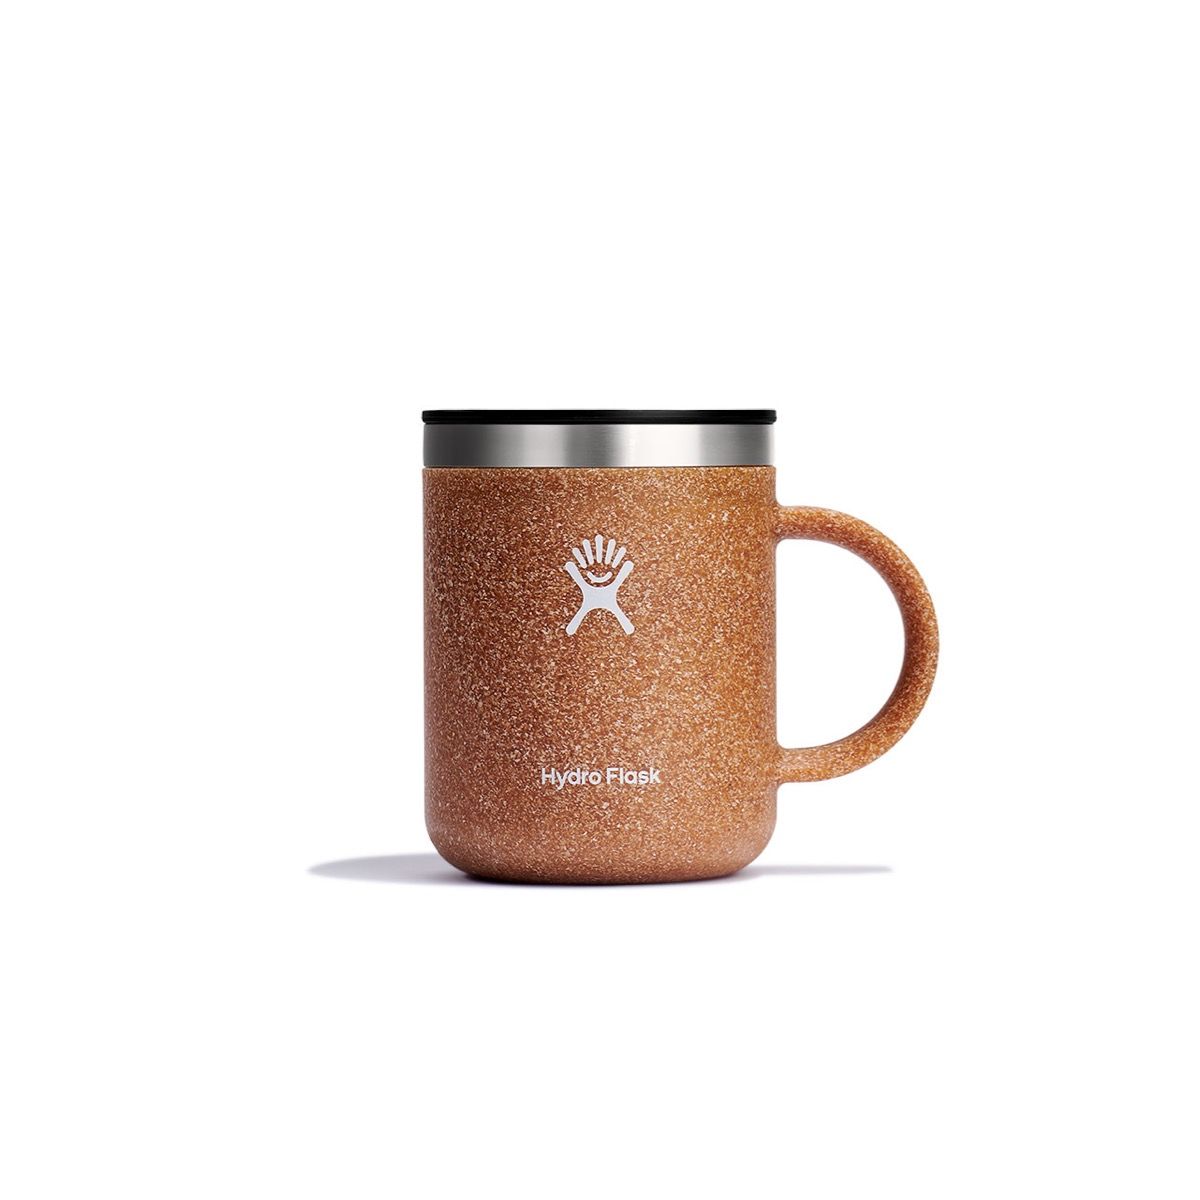 Hydro Flask 12 oz Coffee Mug - Bark